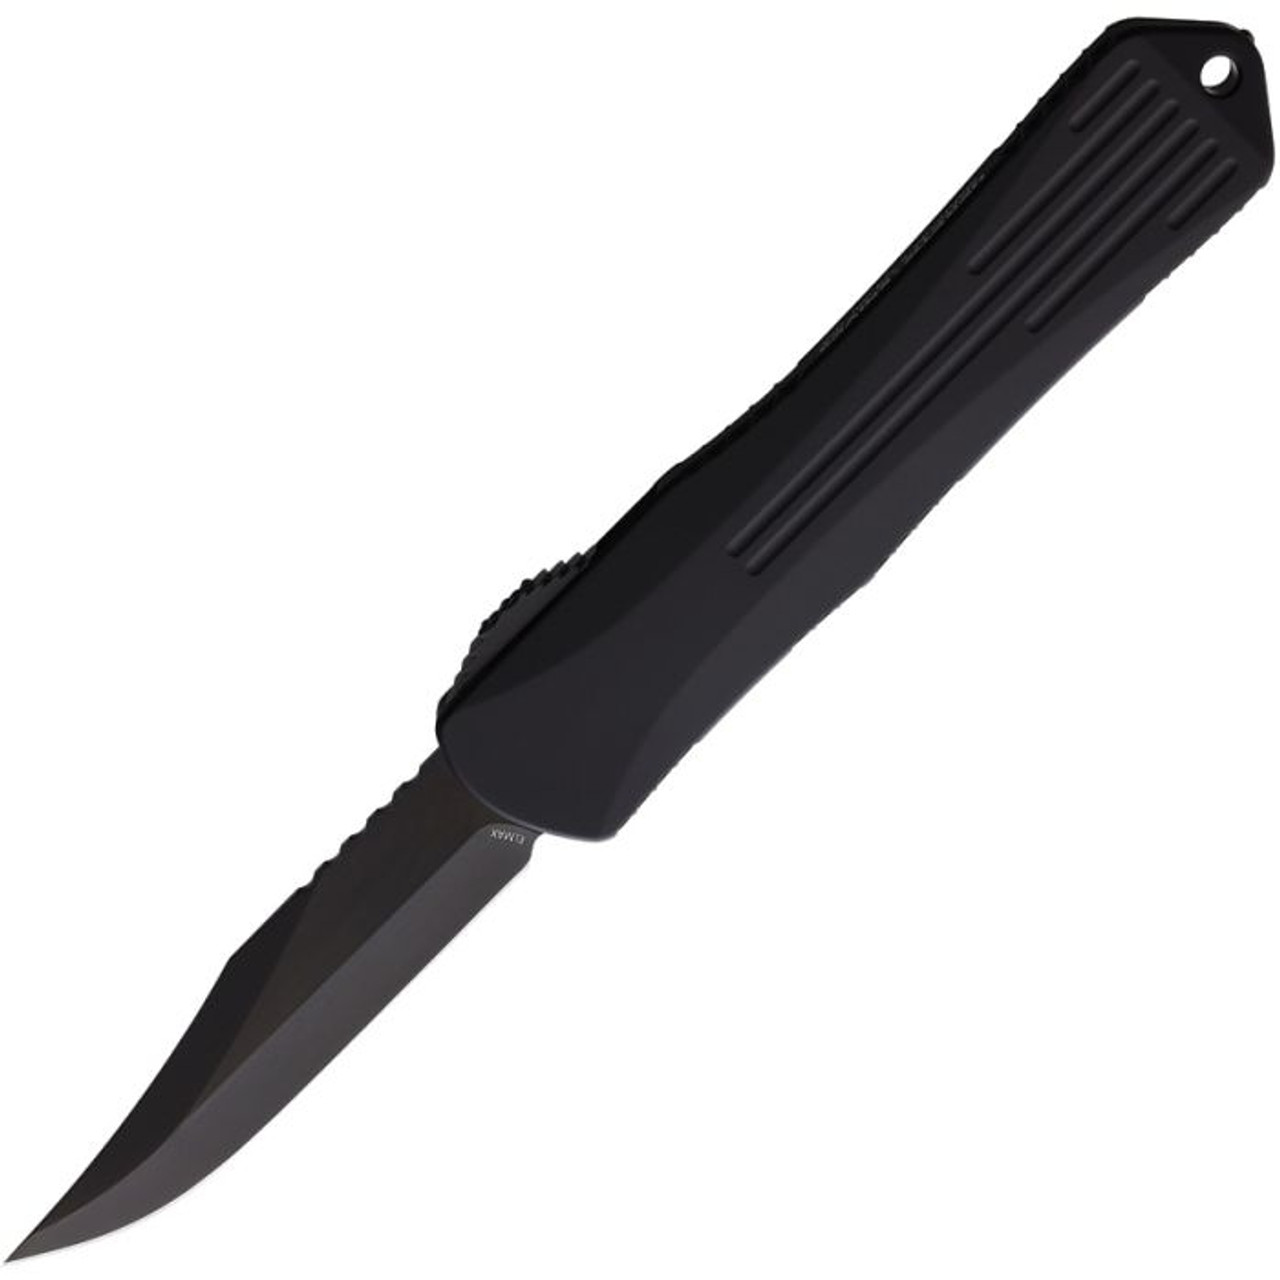 Heretic Knives Manticore X OTF Automatic (H030B6APUCF) - 3.75" Black Elmax Clip Point Plain Edge Blade, Blue Aluminum Front Handle, Purple and Black Carbon Fiber Back Handle